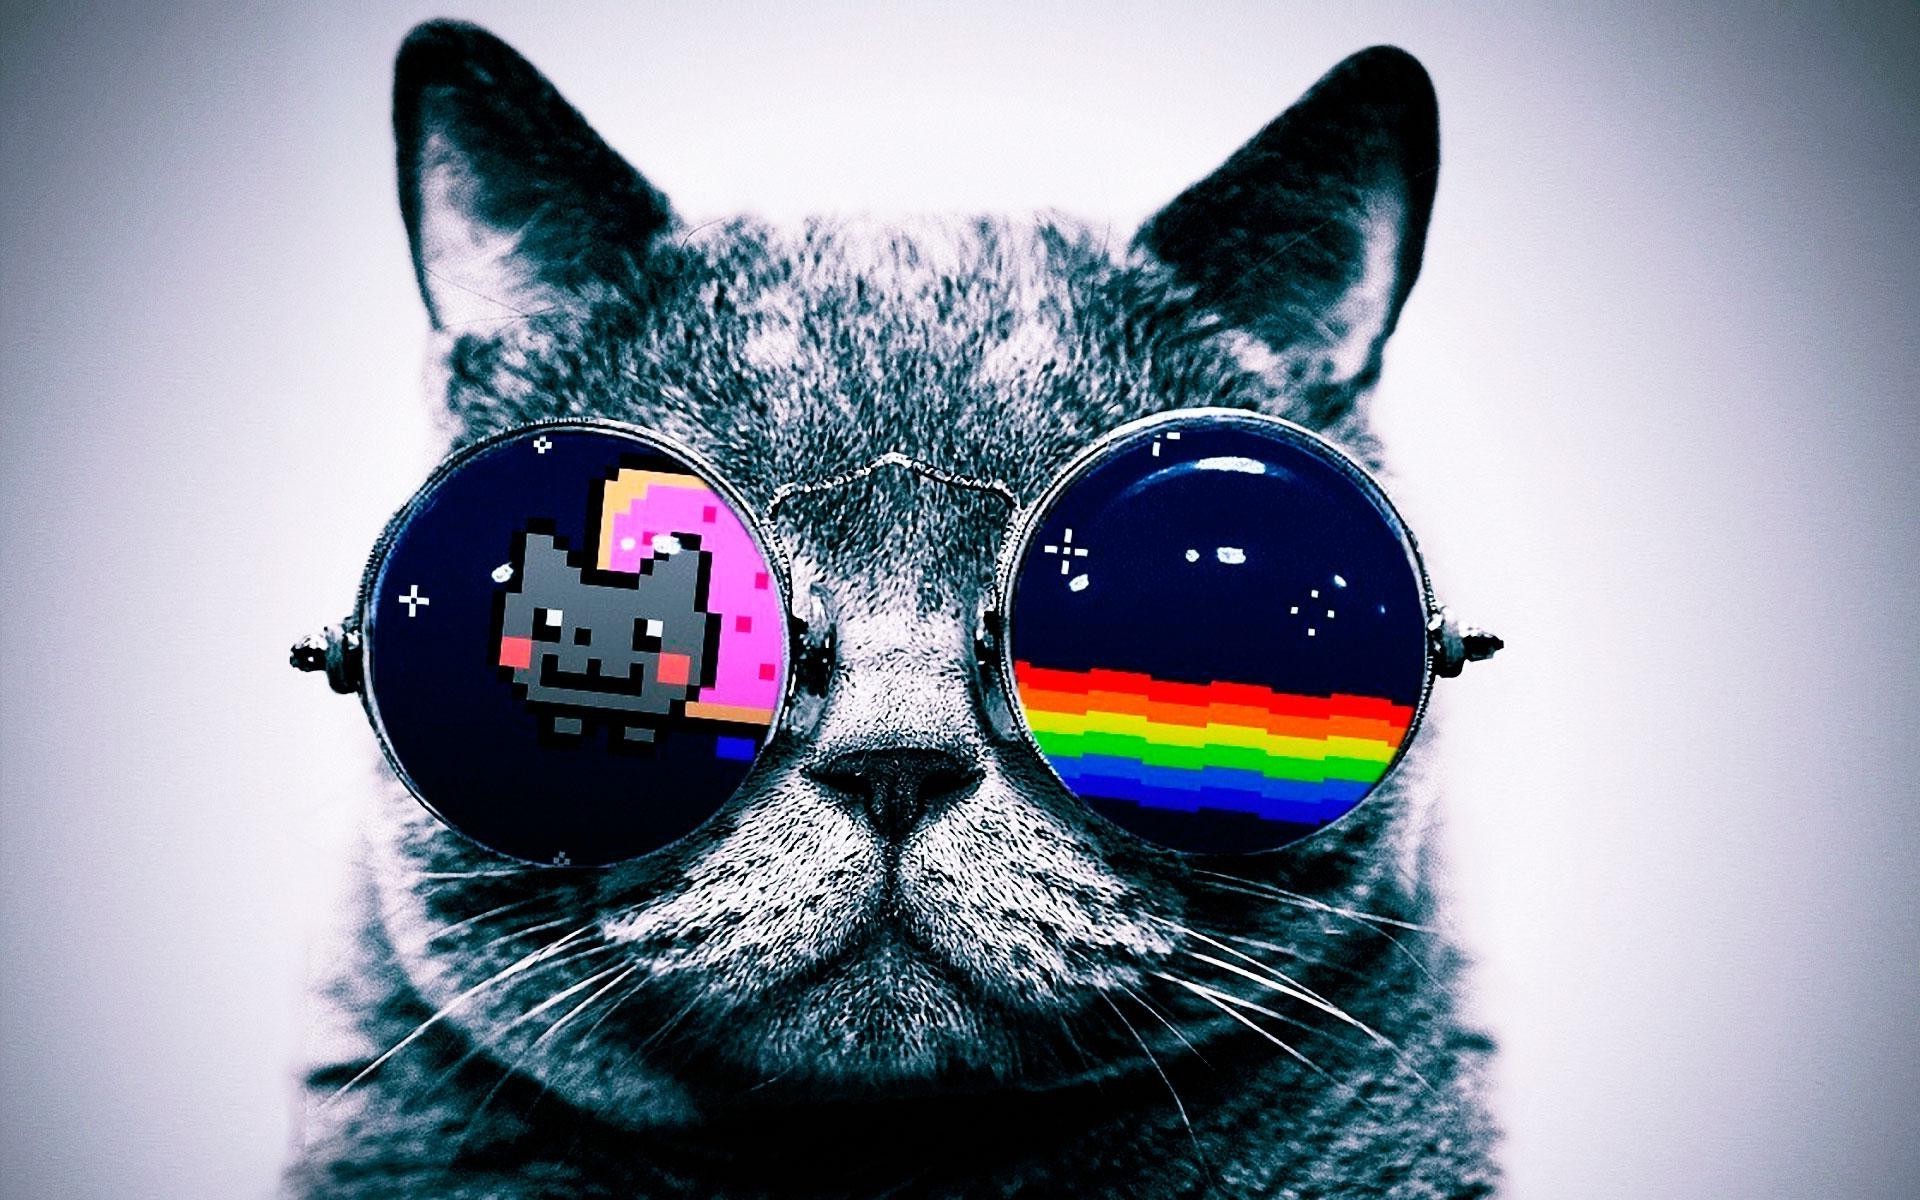 Nyan Cat Cat Glasses Wallpapers Hd / Desktop And Mobile - Cat Wallpaper Hd  For Pc - 1920x1200 Wallpaper 